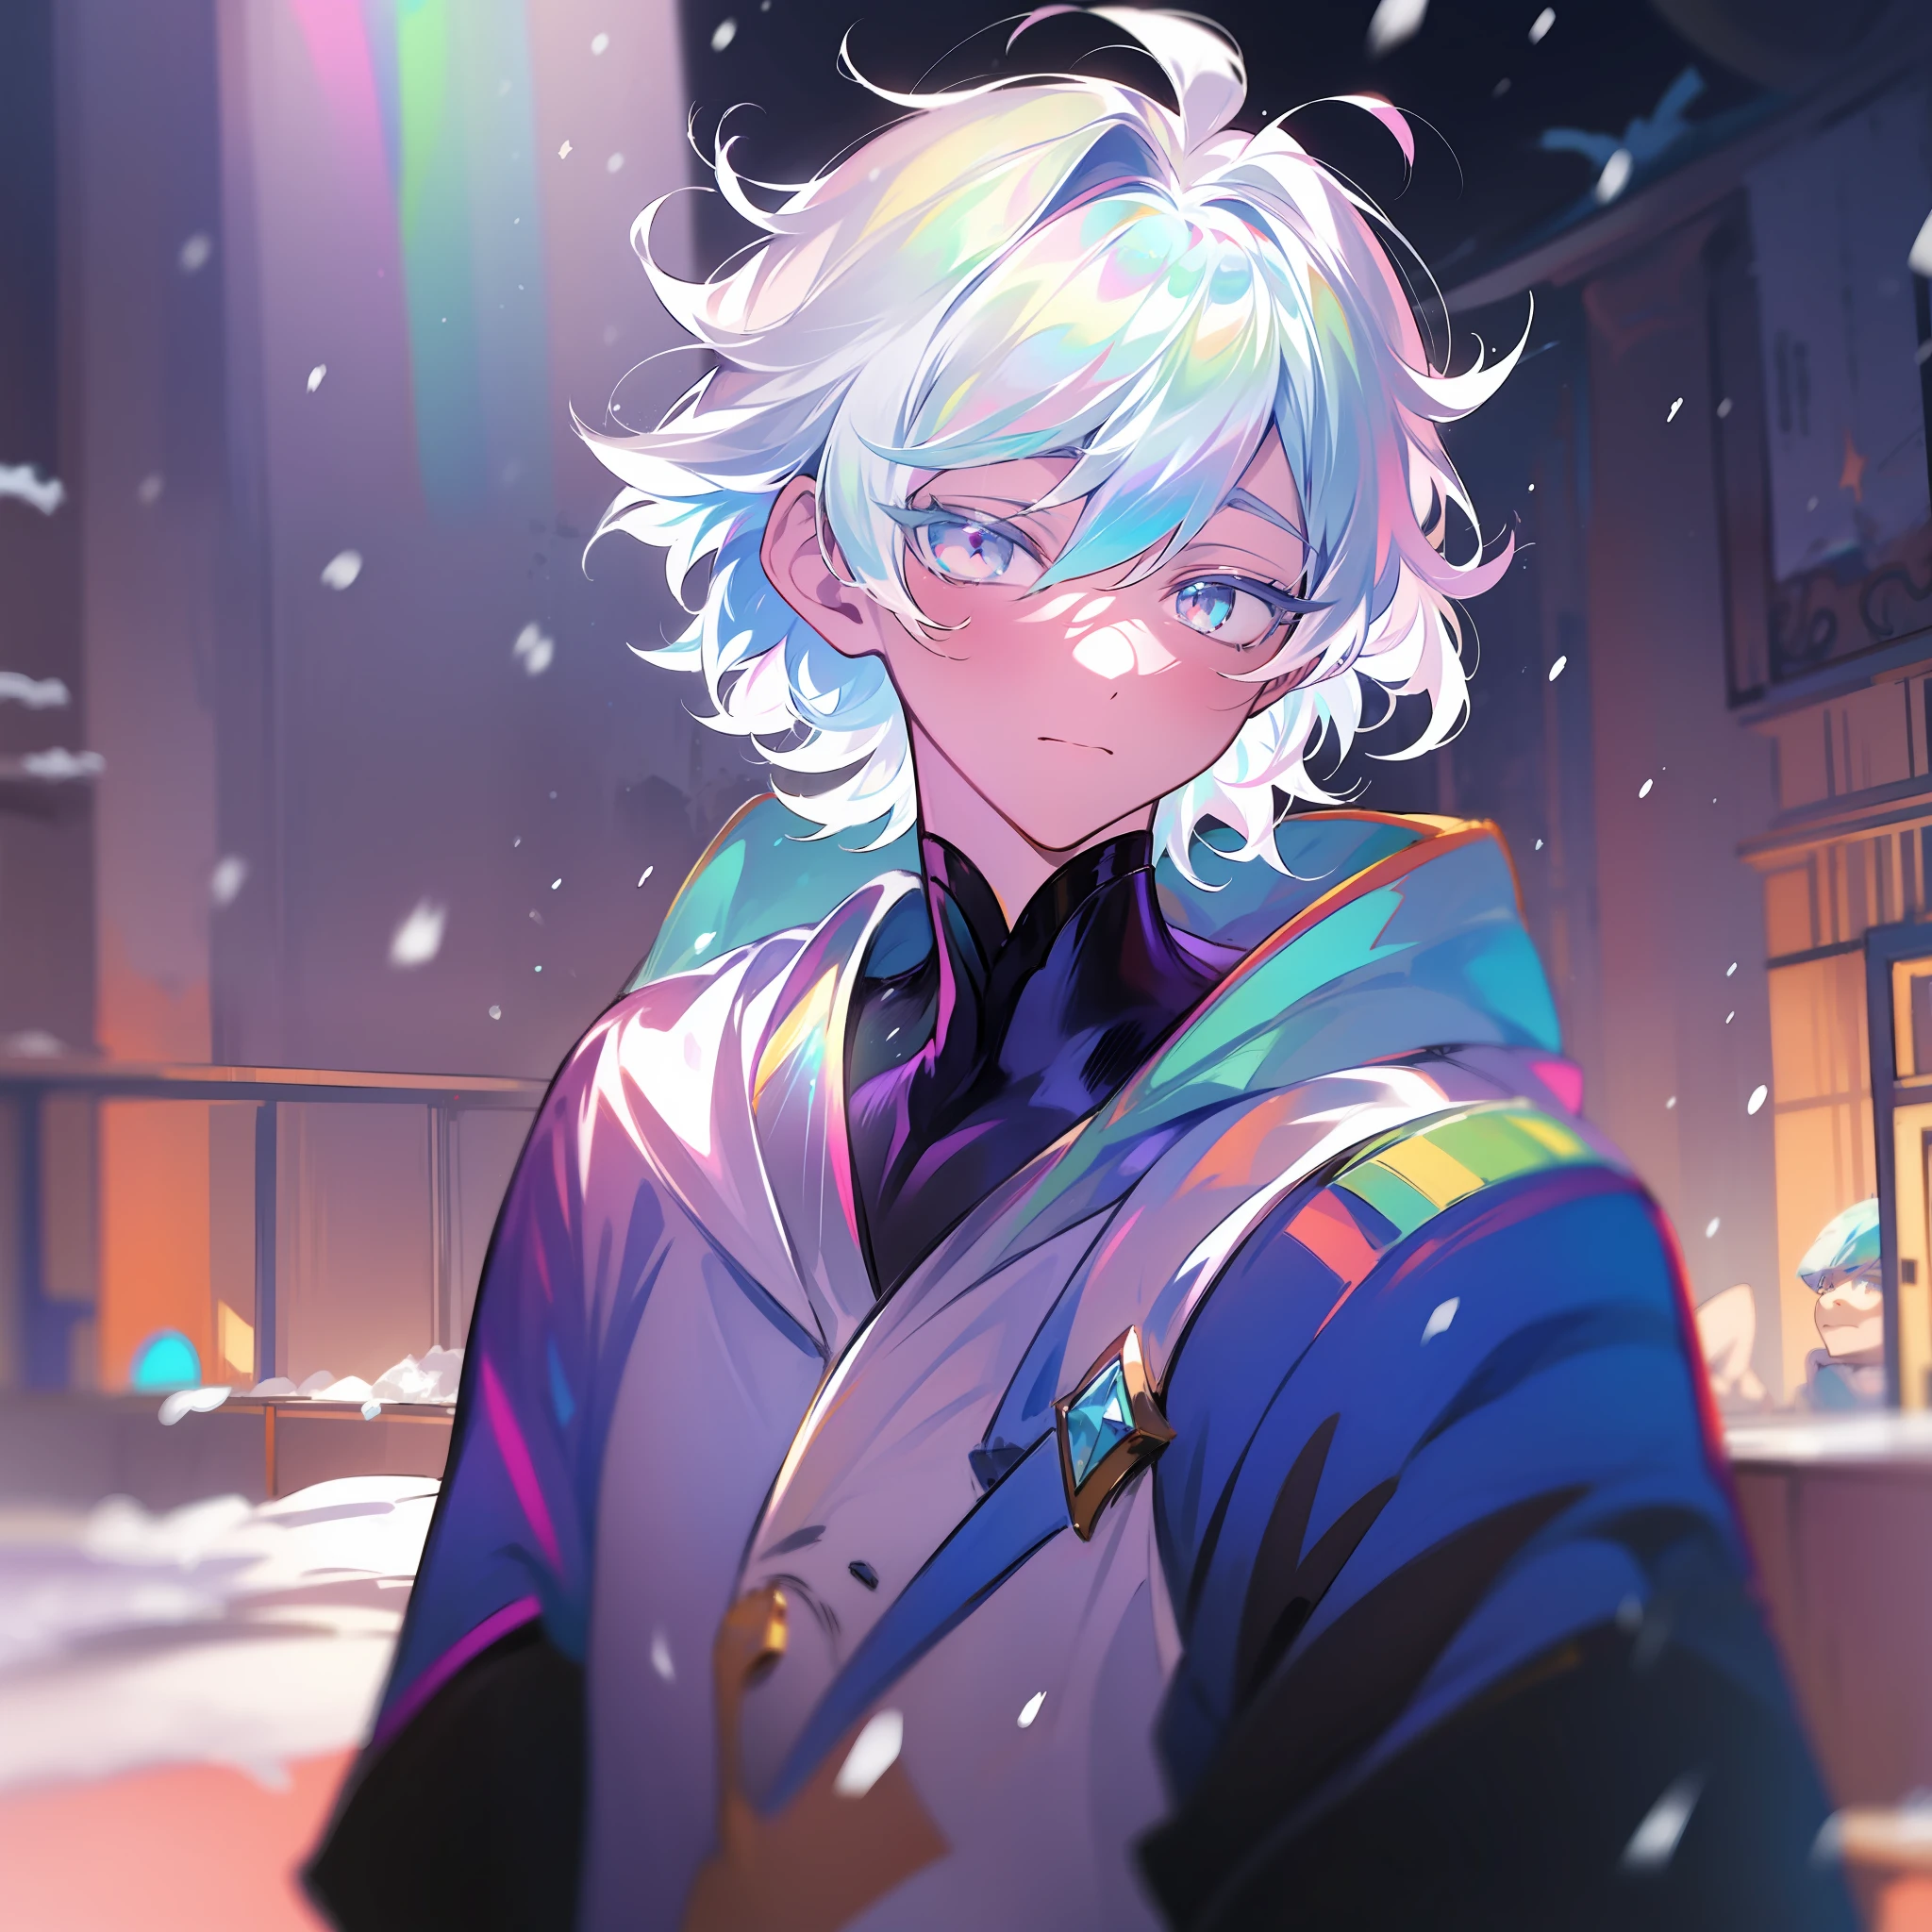 0.7>,Anime Junge,Schnee,(Männlich),Jacke,Diamant,mehrfarbige Haare, mehrfarbige Augen